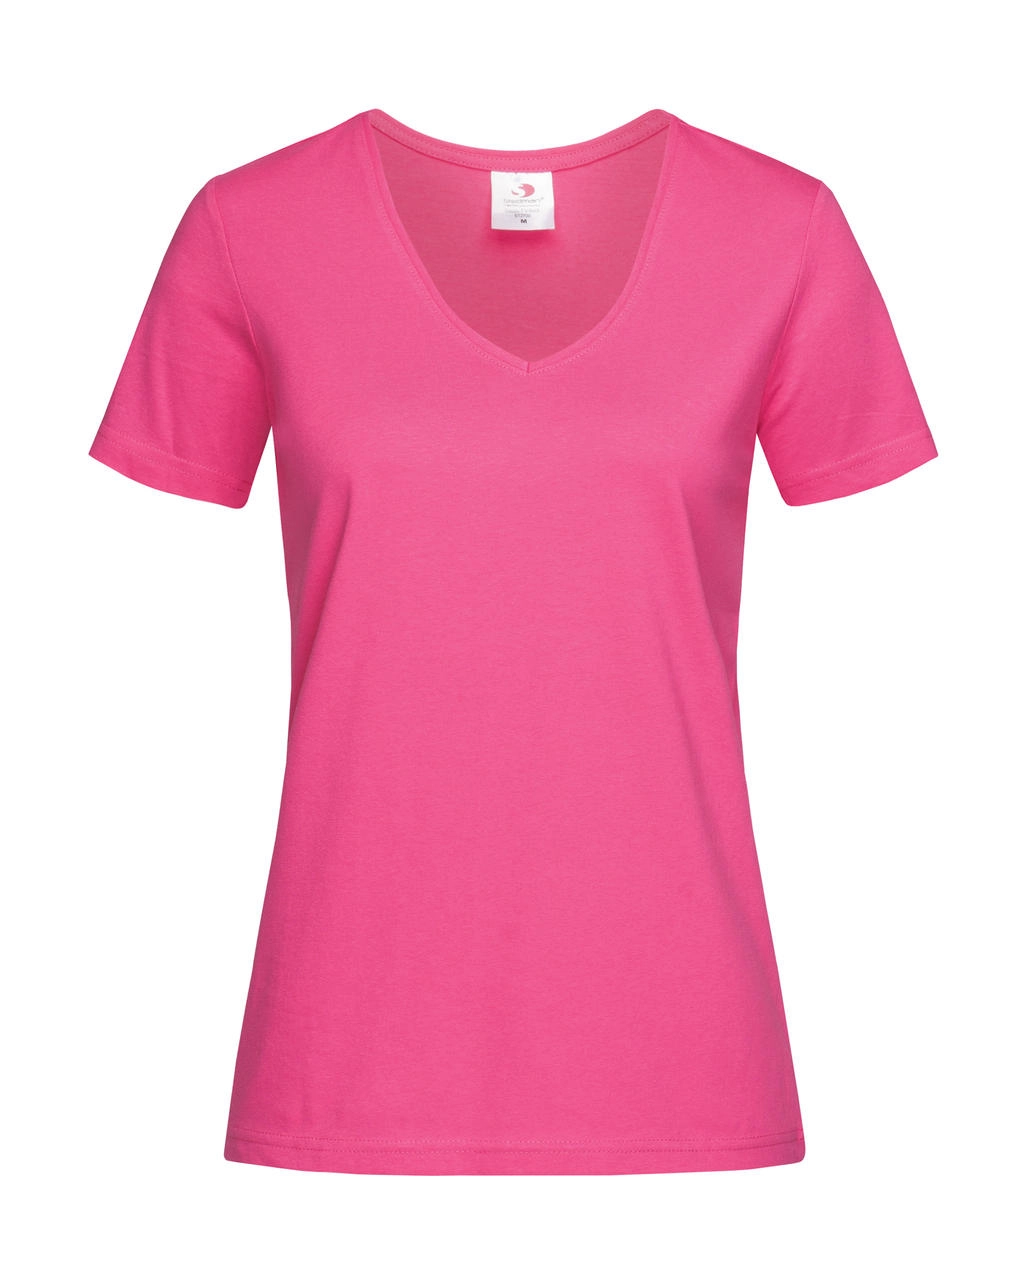 Classic-T V-Neck Women zum Besticken und Bedrucken in der Farbe Sweet Pink mit Ihren Logo, Schriftzug oder Motiv.